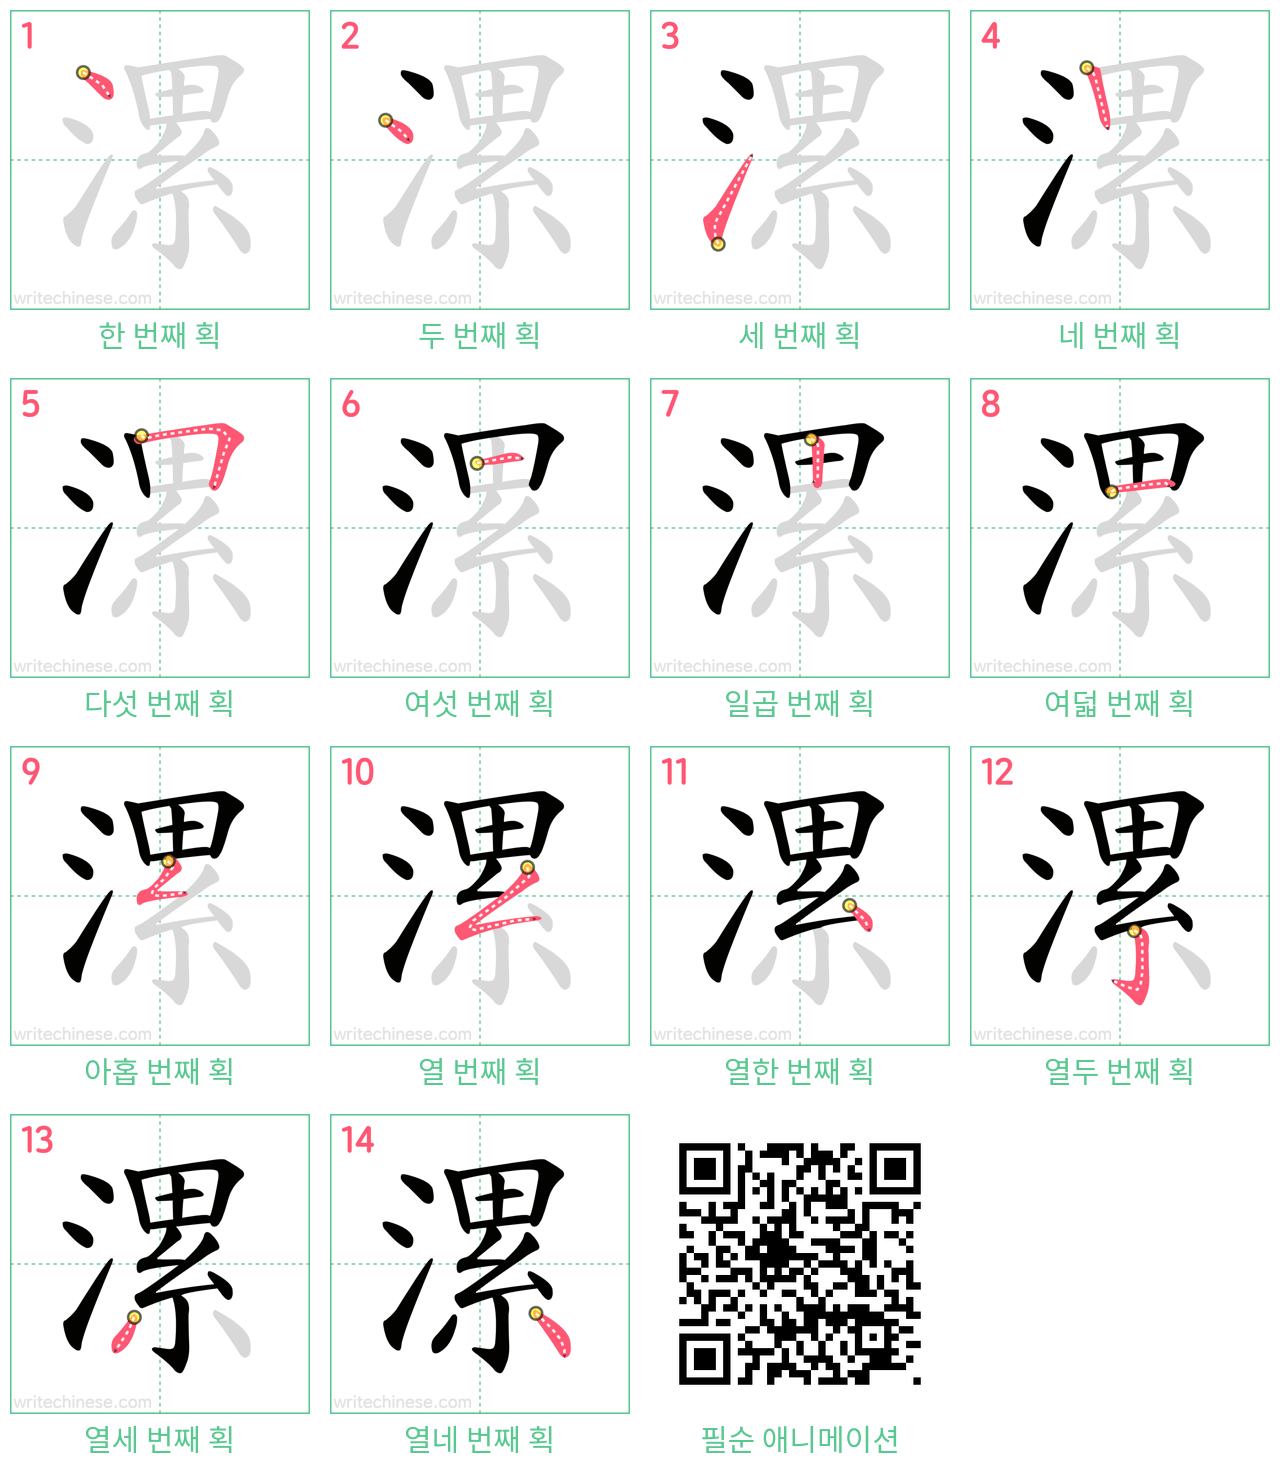 漯 step-by-step stroke order diagrams